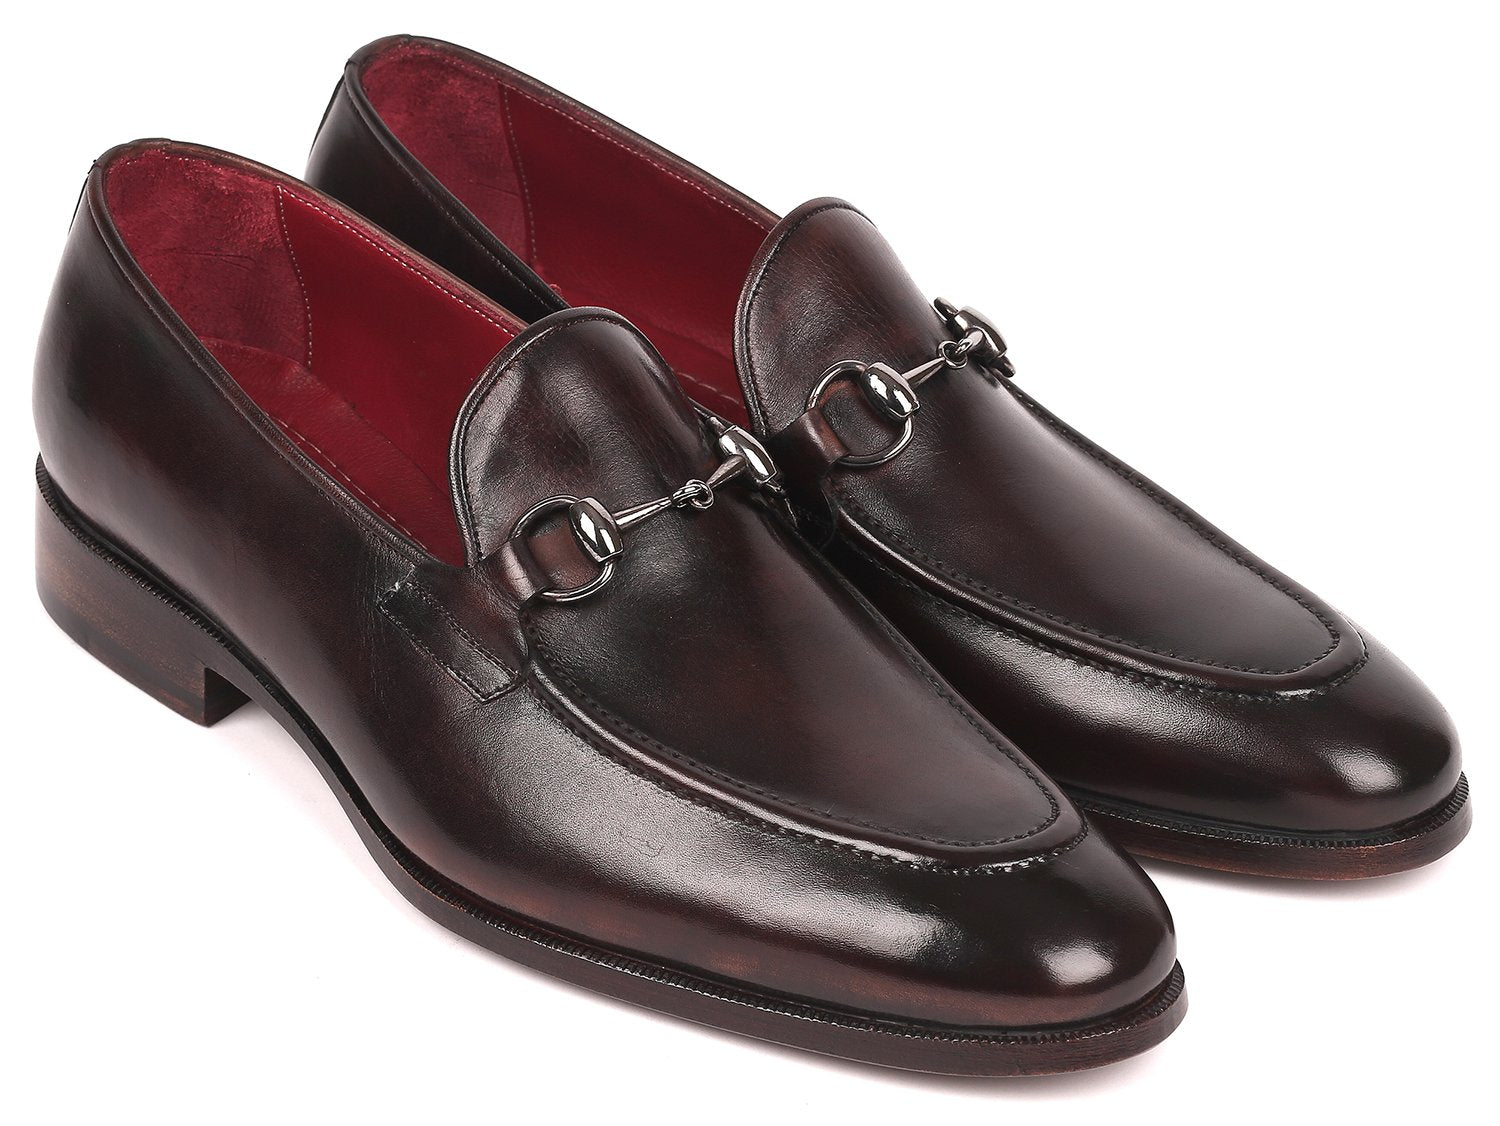 Paul Parkman Men's Brown Horsebit Loafers
– WKshoes
